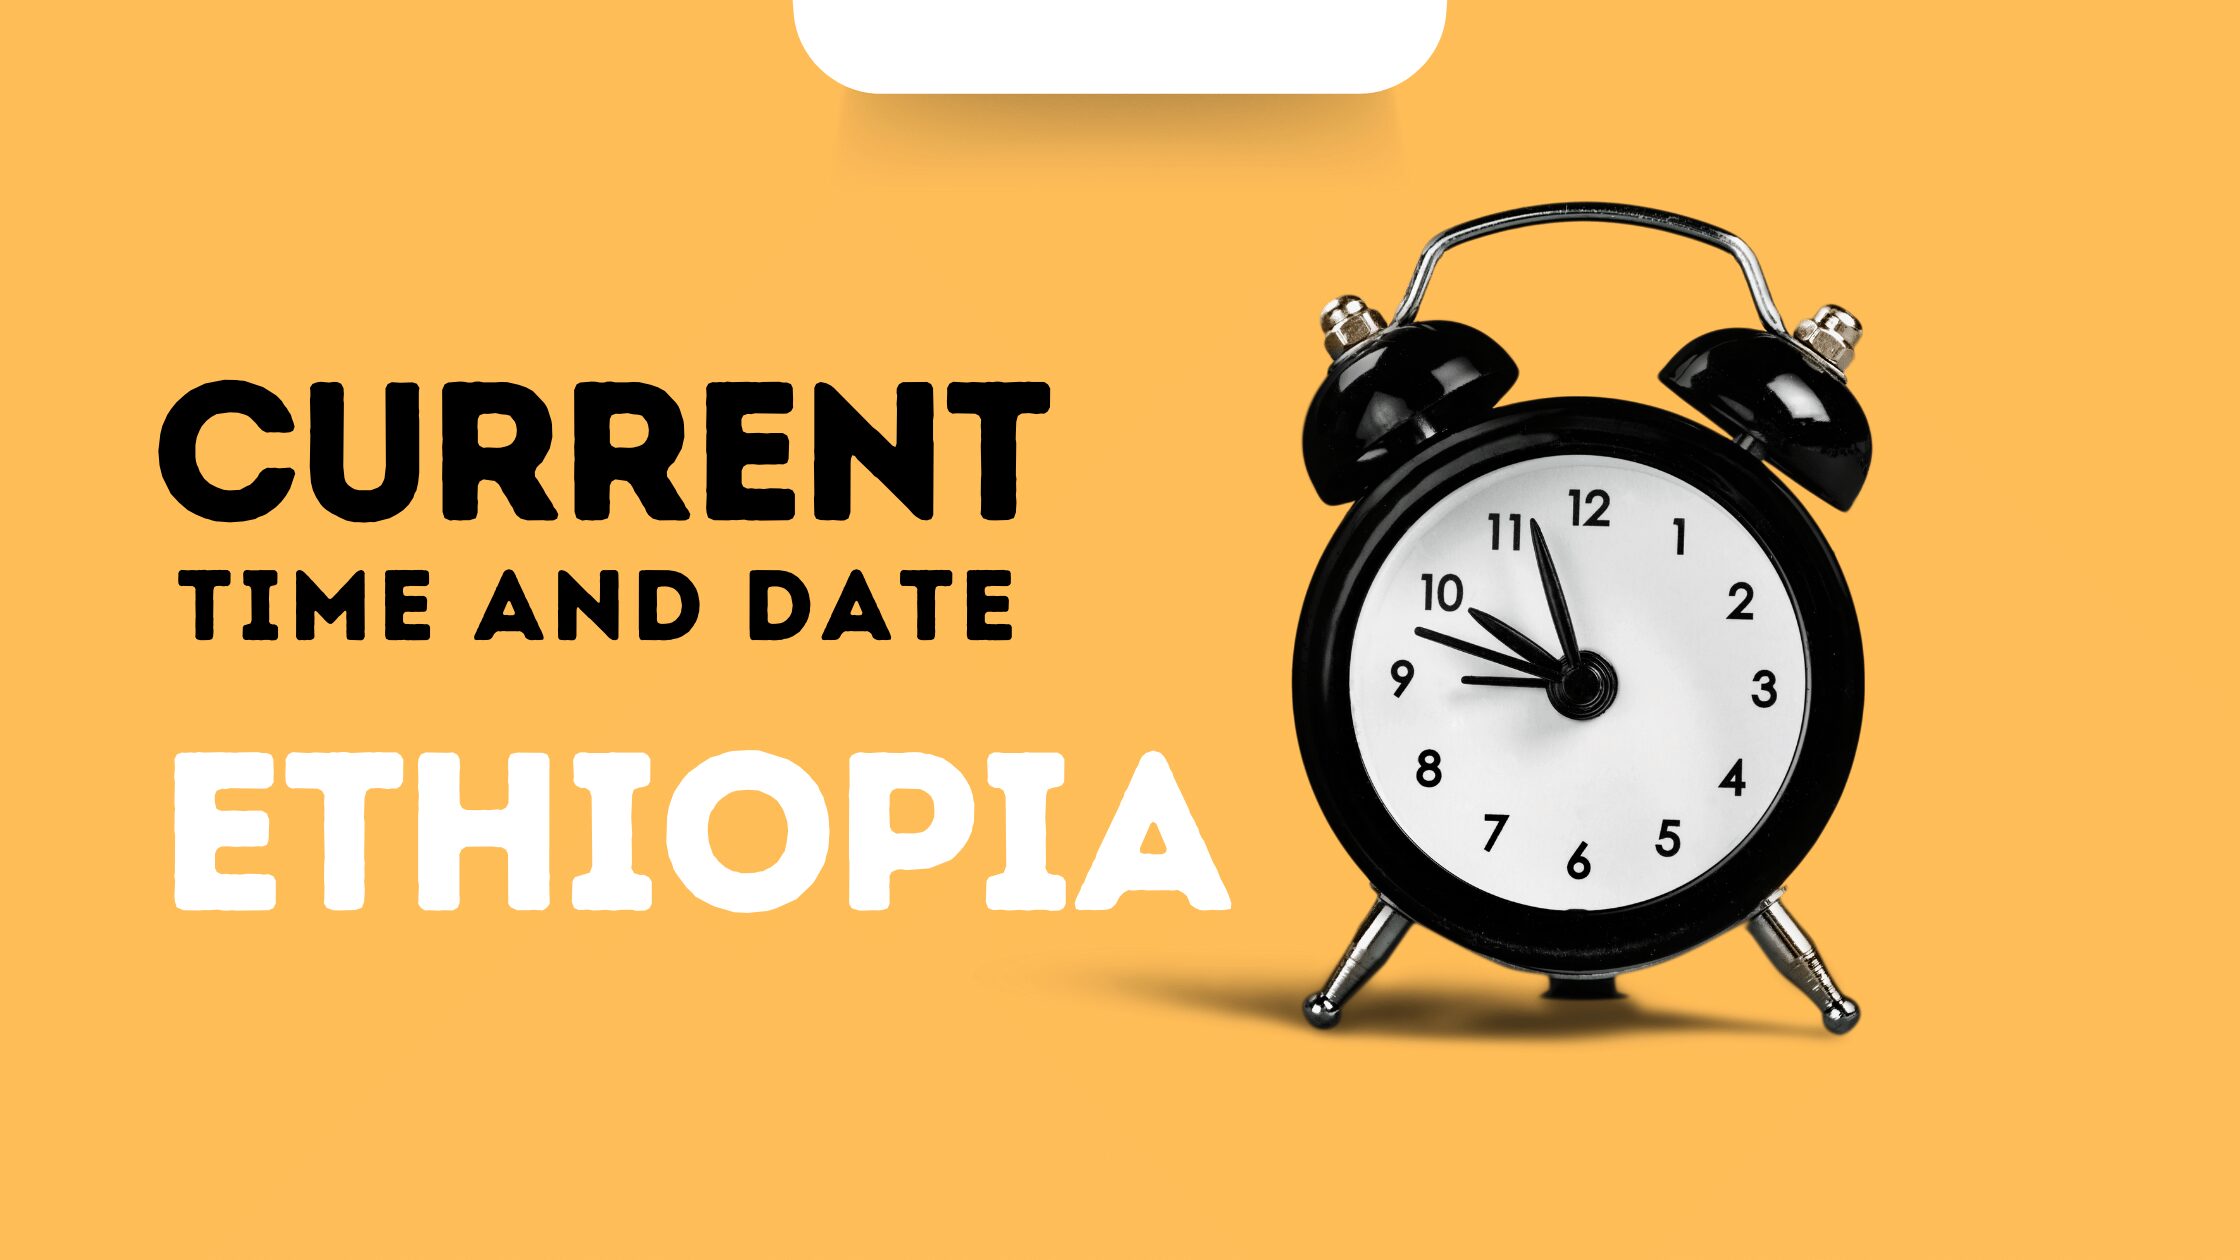 Ethiopia time now